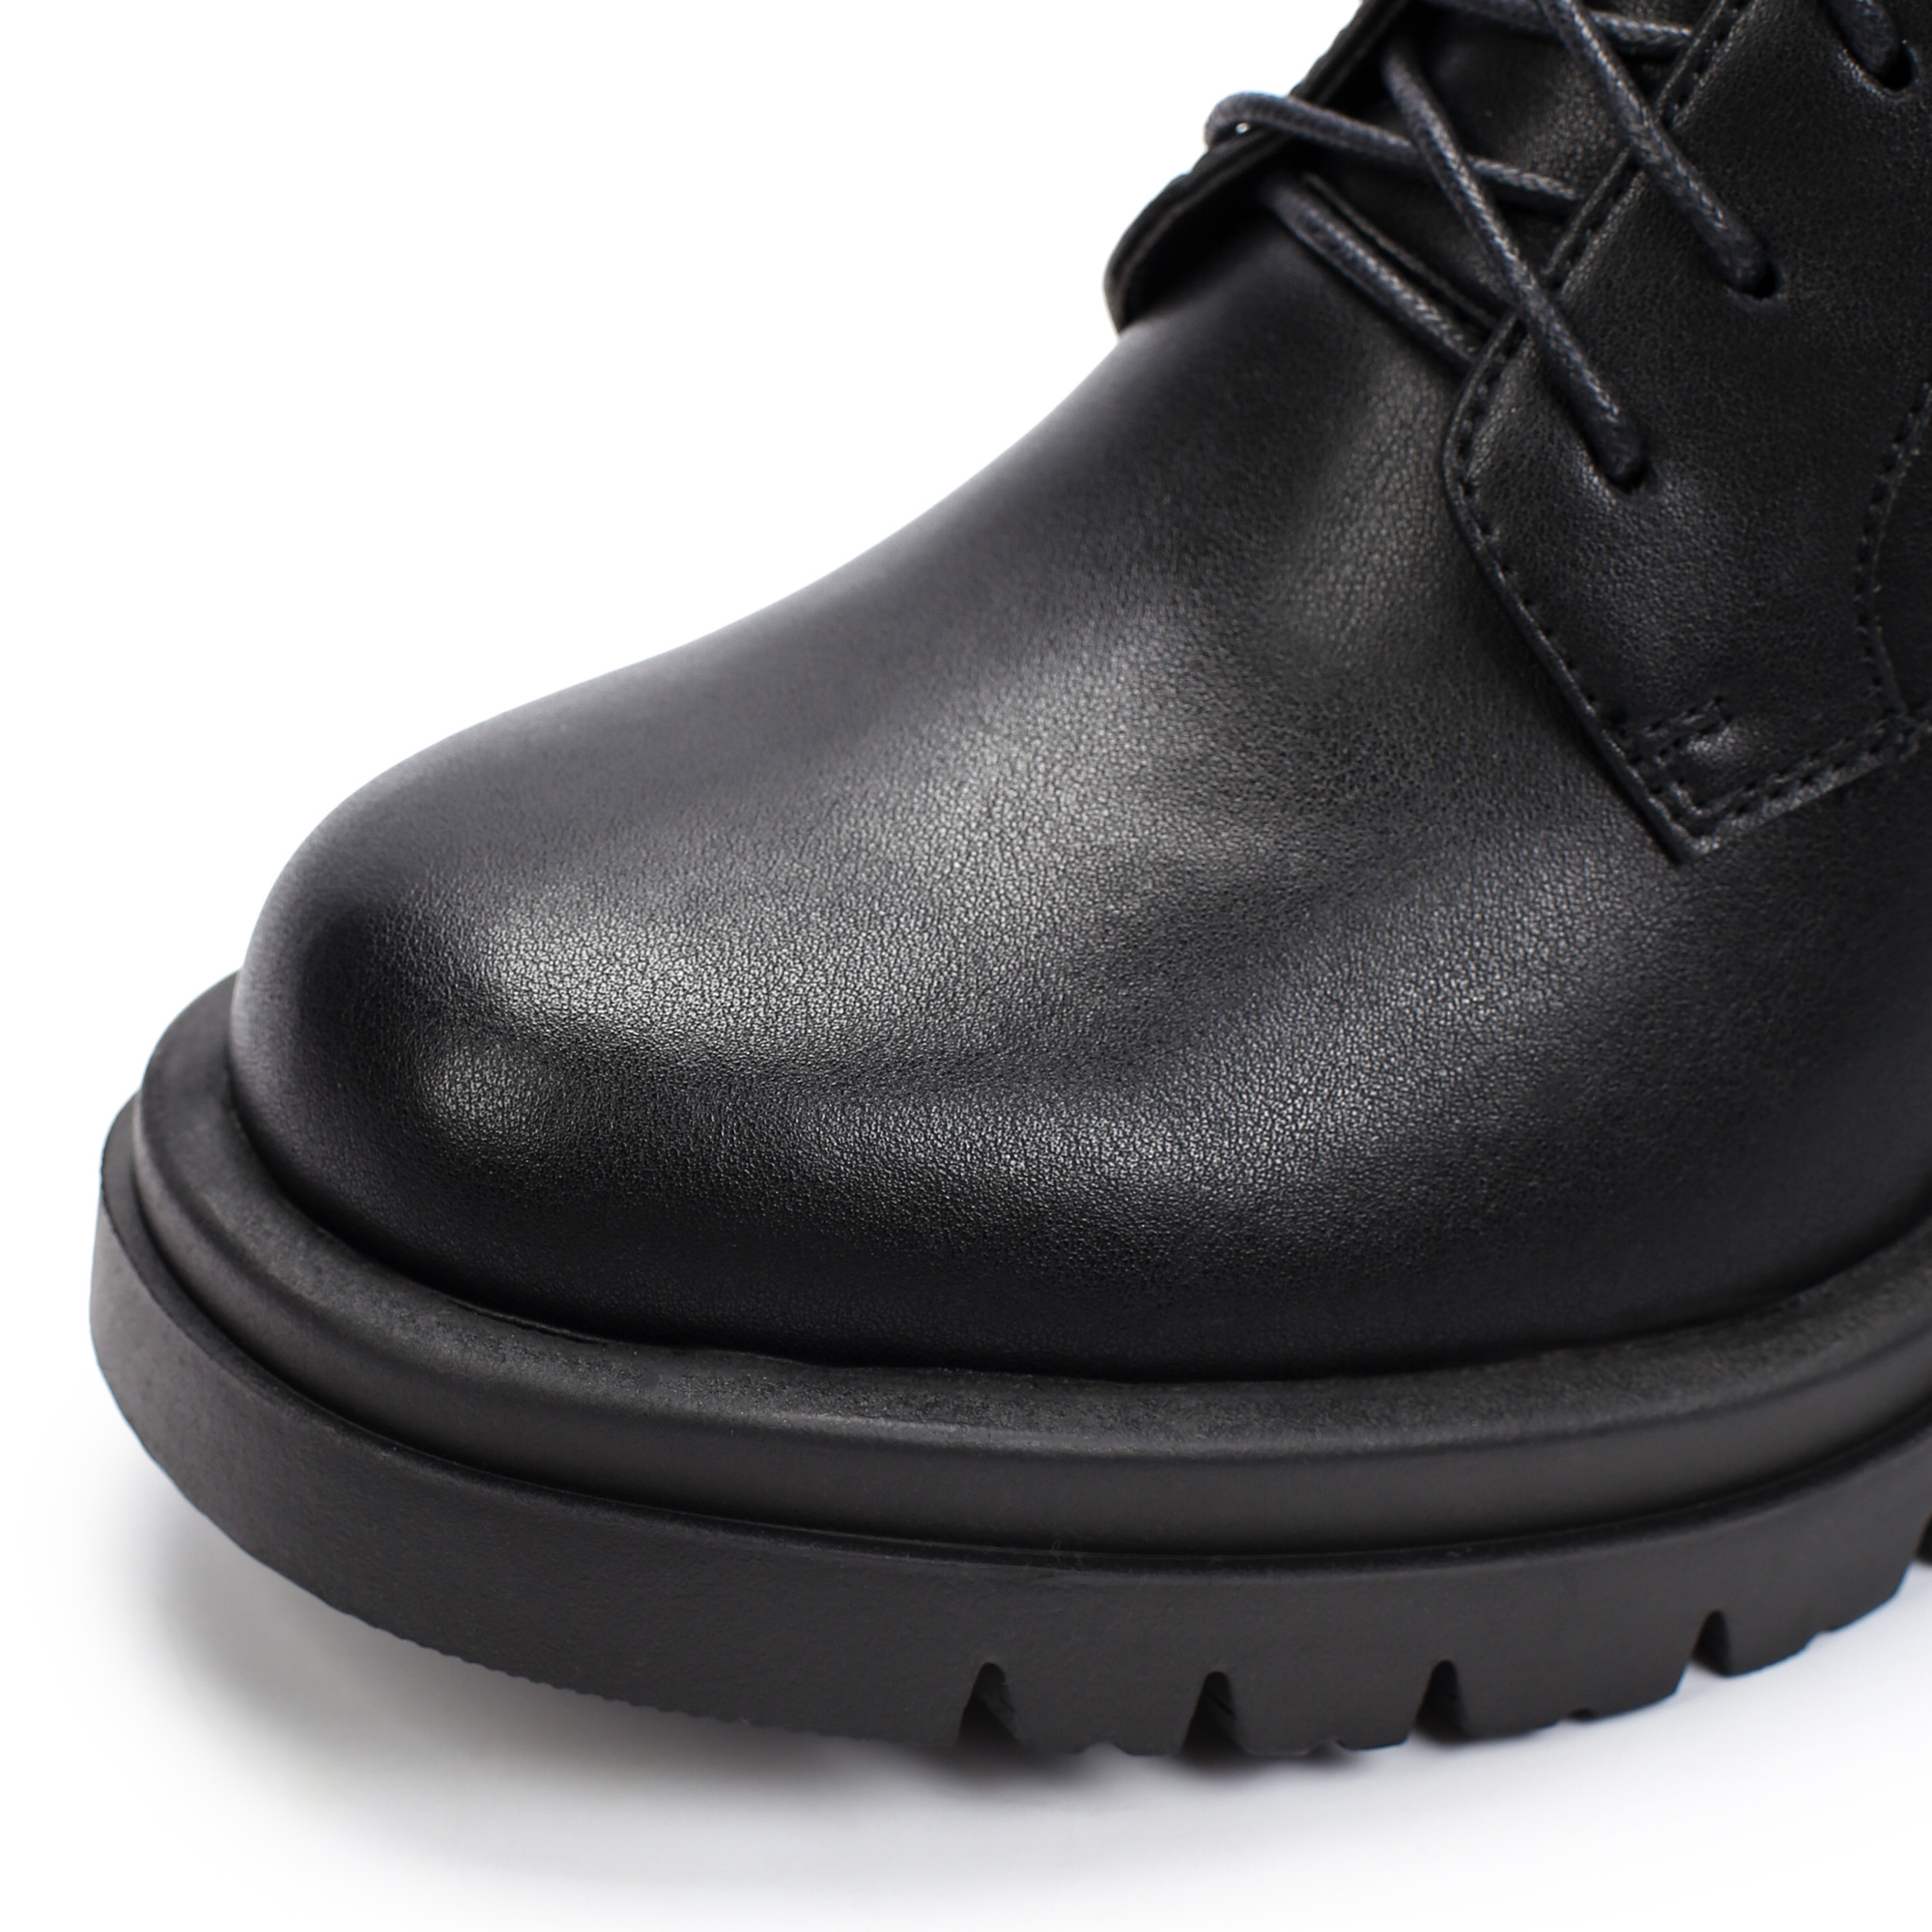 Ботинки Thomas Munz 126-480A-5602, цвет черный, размер 38 - фото 6